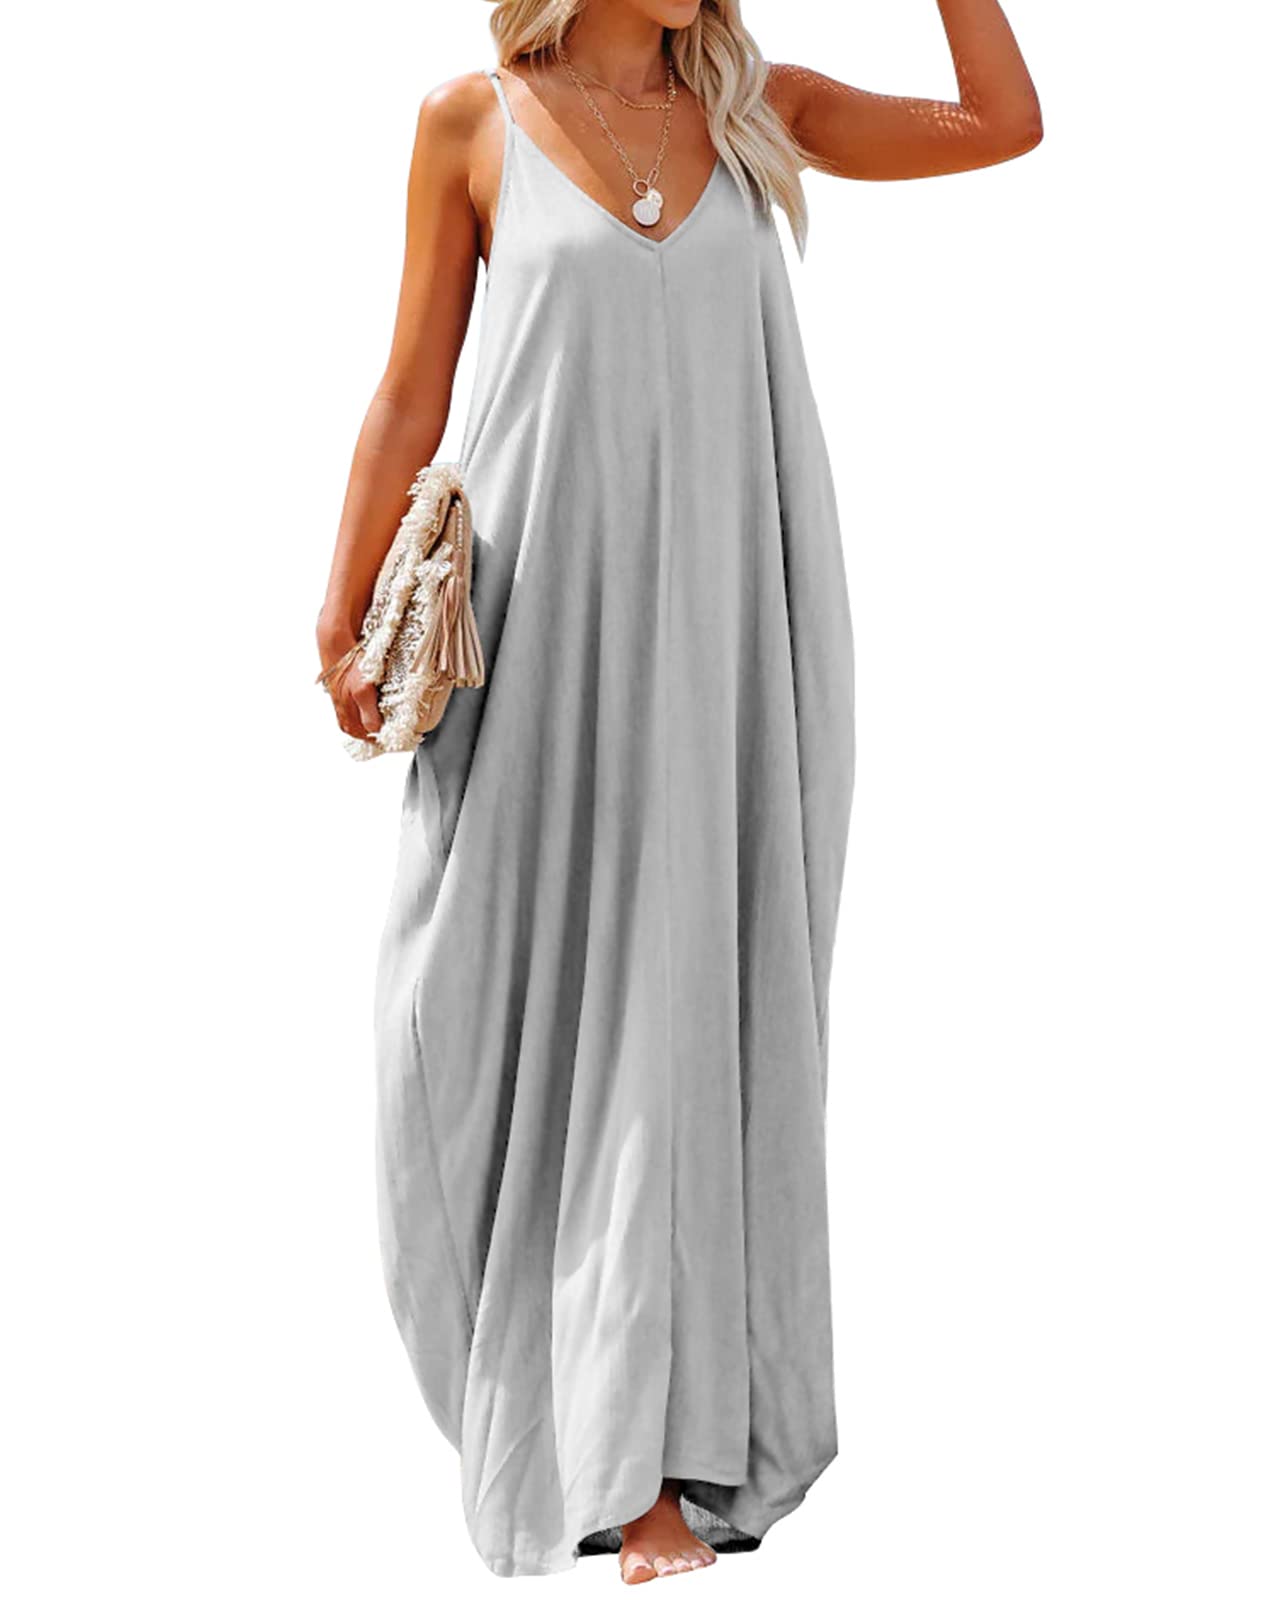 Poetsky Casual Dresses for Women Summer V Neck Sleeveless Long Dresses Light Grey L